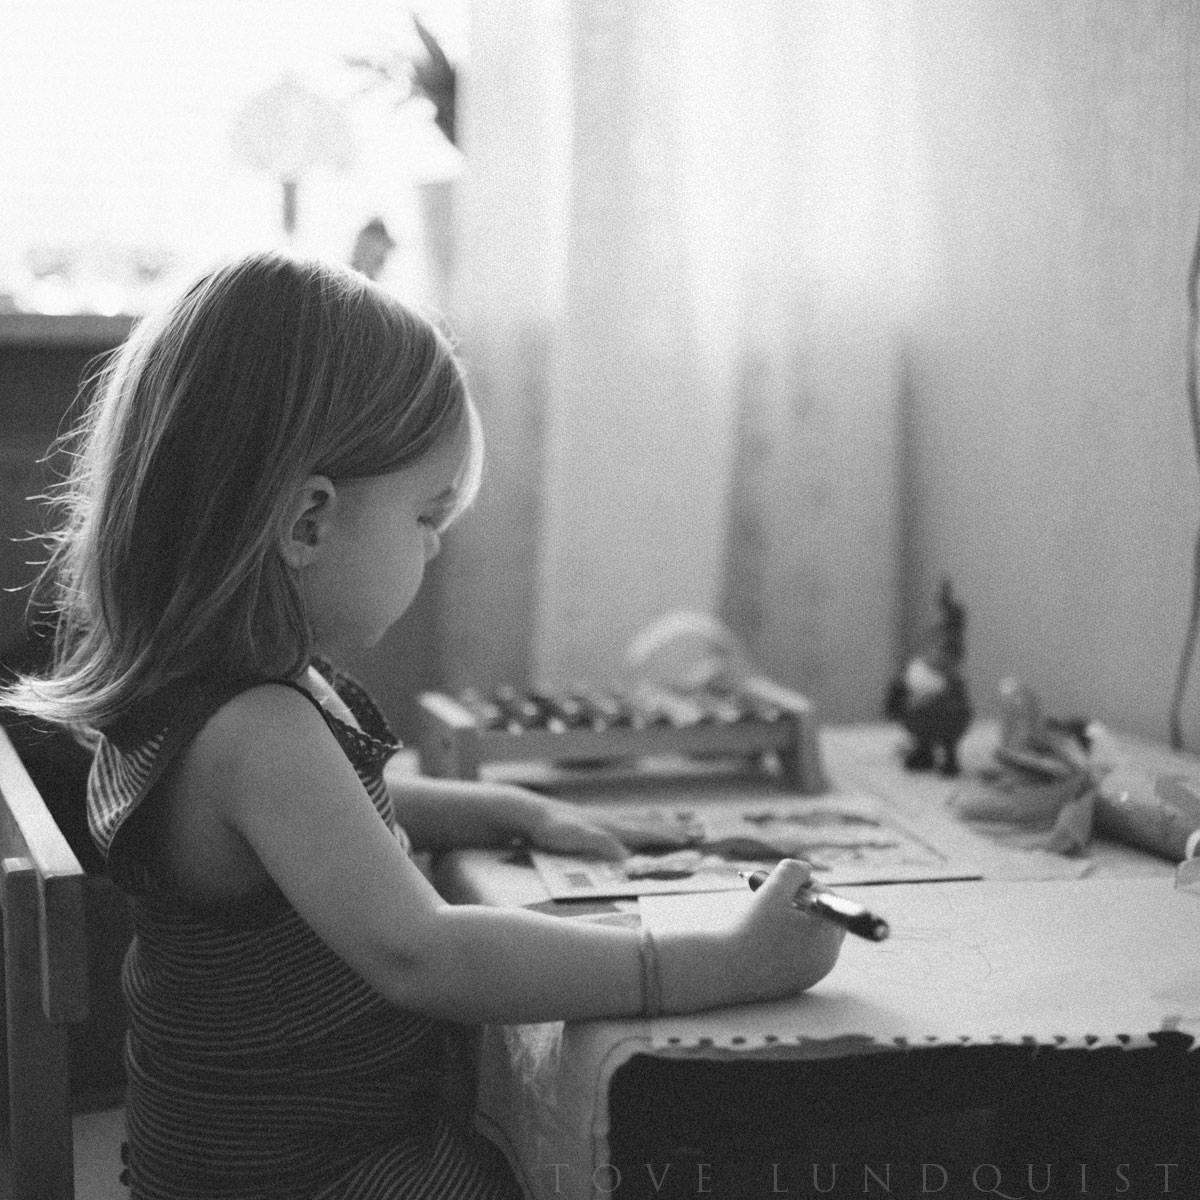 Svartvit foto på barn. Dokumentär fotografering tillsammans med fotograf Tove Lundquist, verksam i Malmö, Skåne.